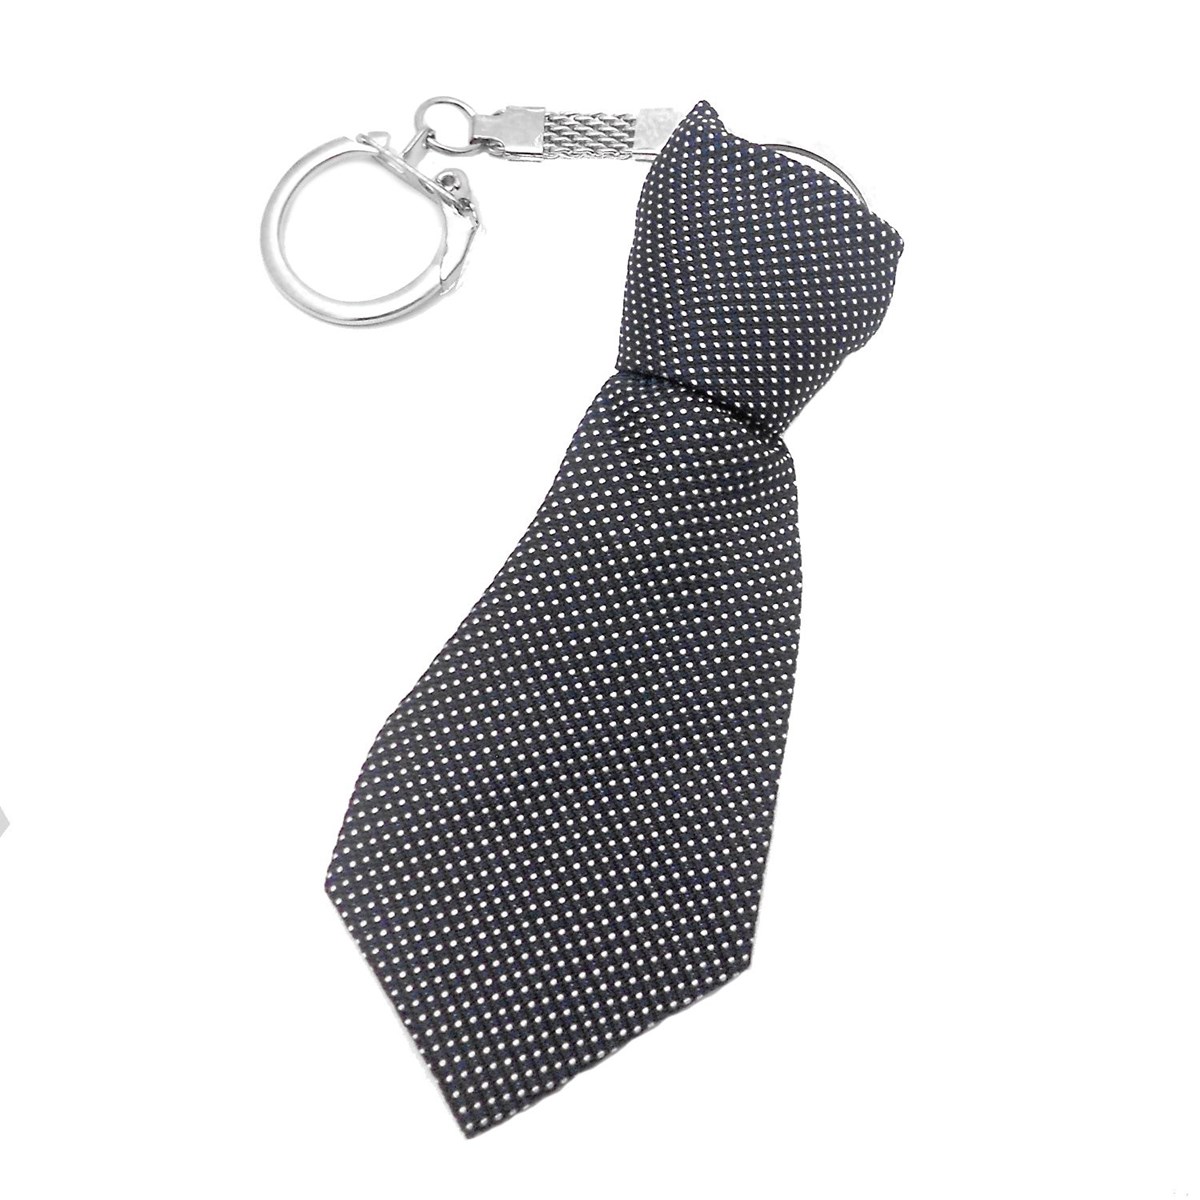 Porte-clés cravate en tissu moucheté pois blanc sur noir argenté